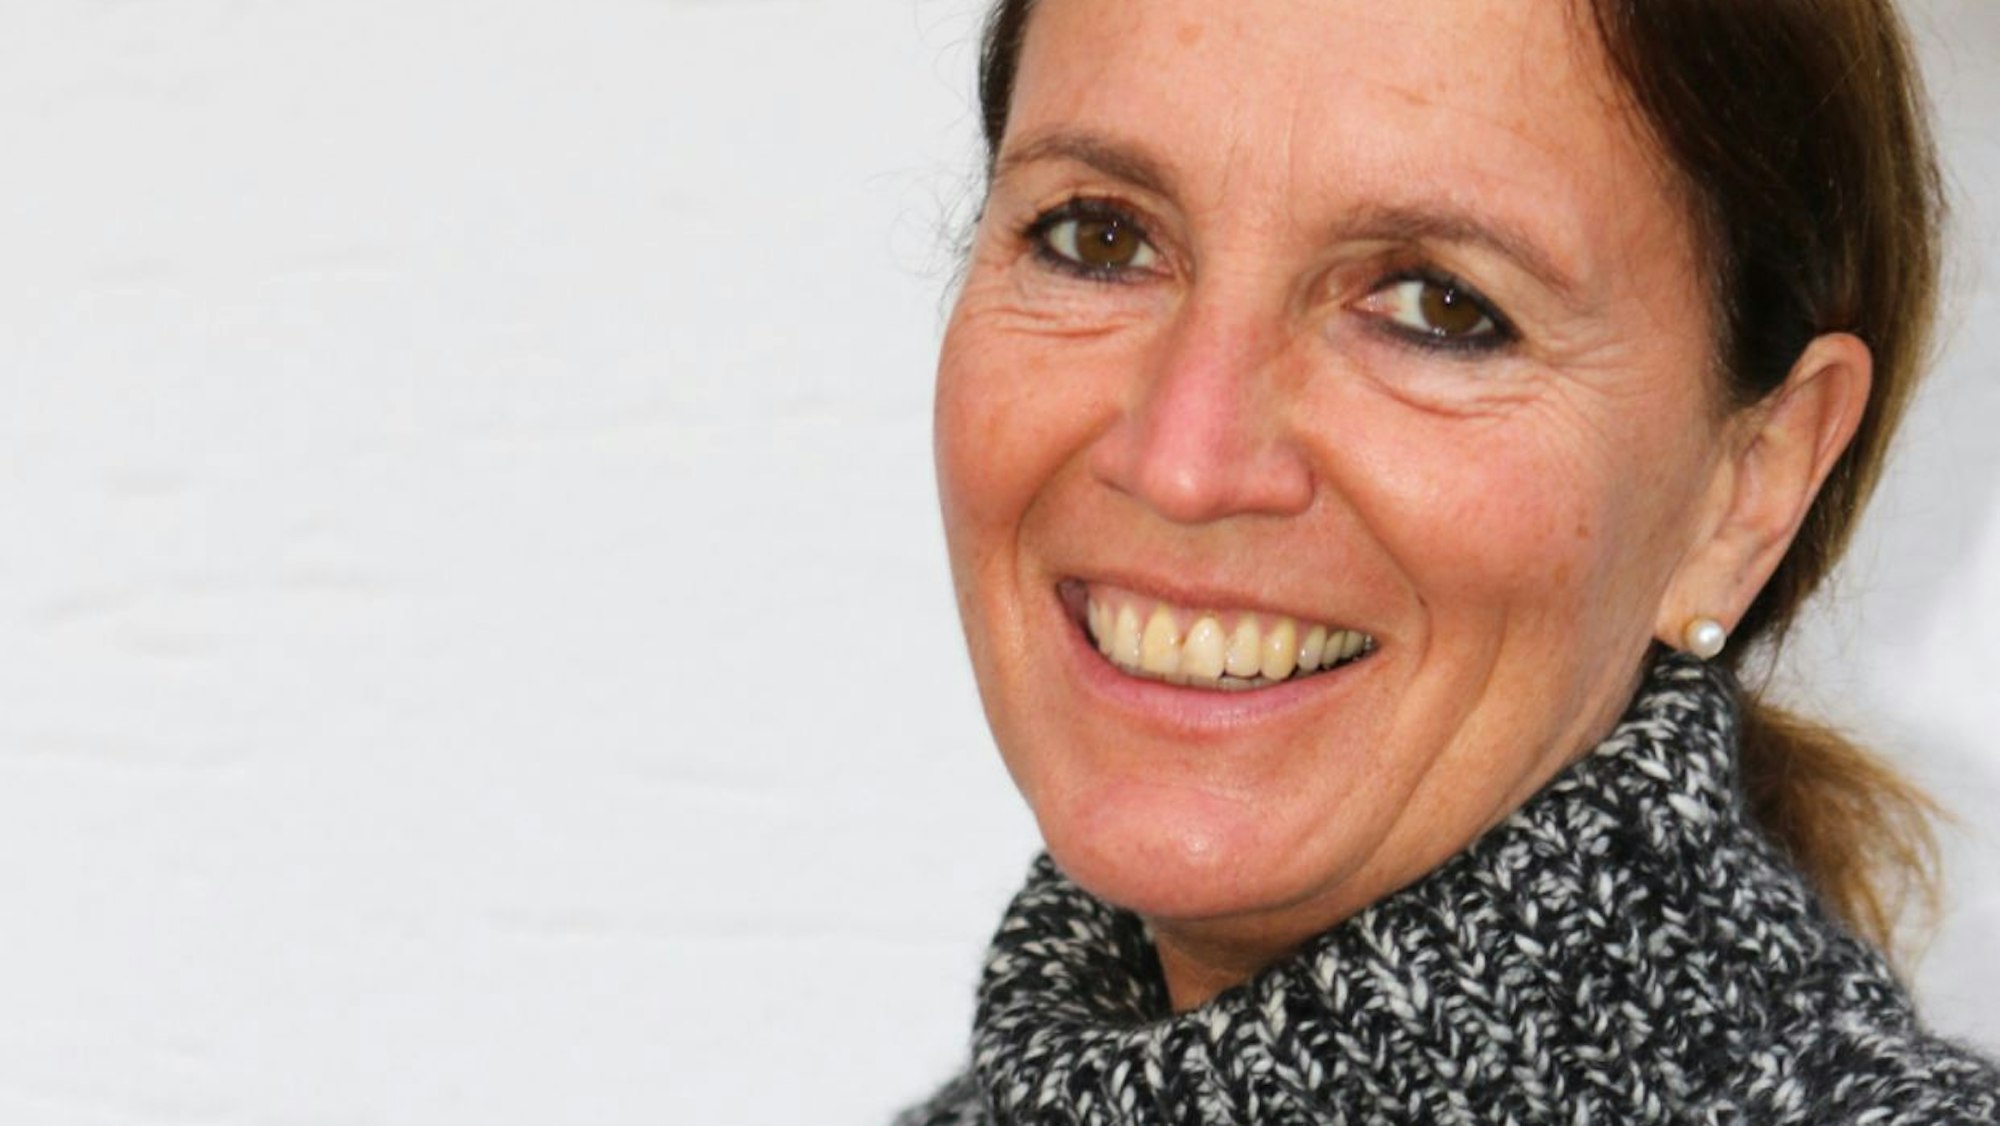 Christine Joisten ist Sportmedizinerin und Leiterin der Abteilung Bewegungs- und Gesundheitsförderung an der Deutschen Sporthochschule Köln und Adipositas-Expertin